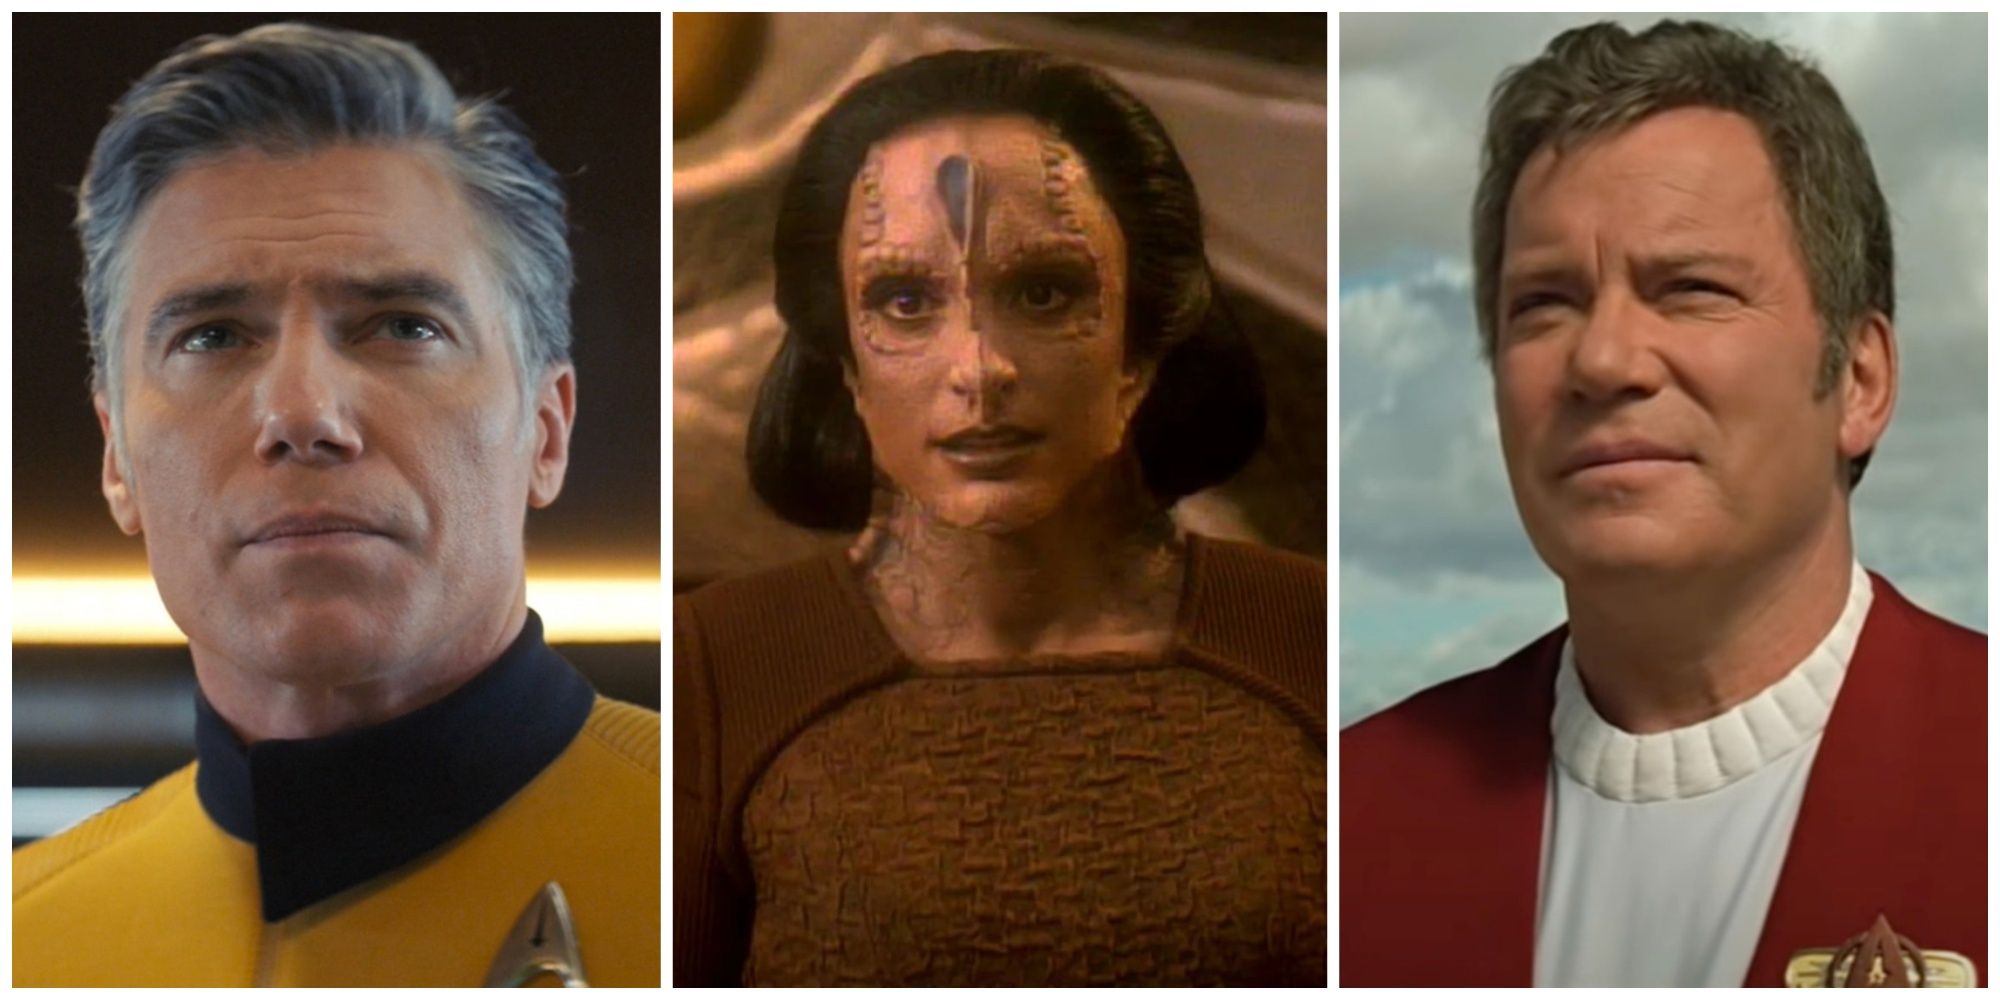 Split-image showing Star Trek characters: Pike Ghemor and Kirk.